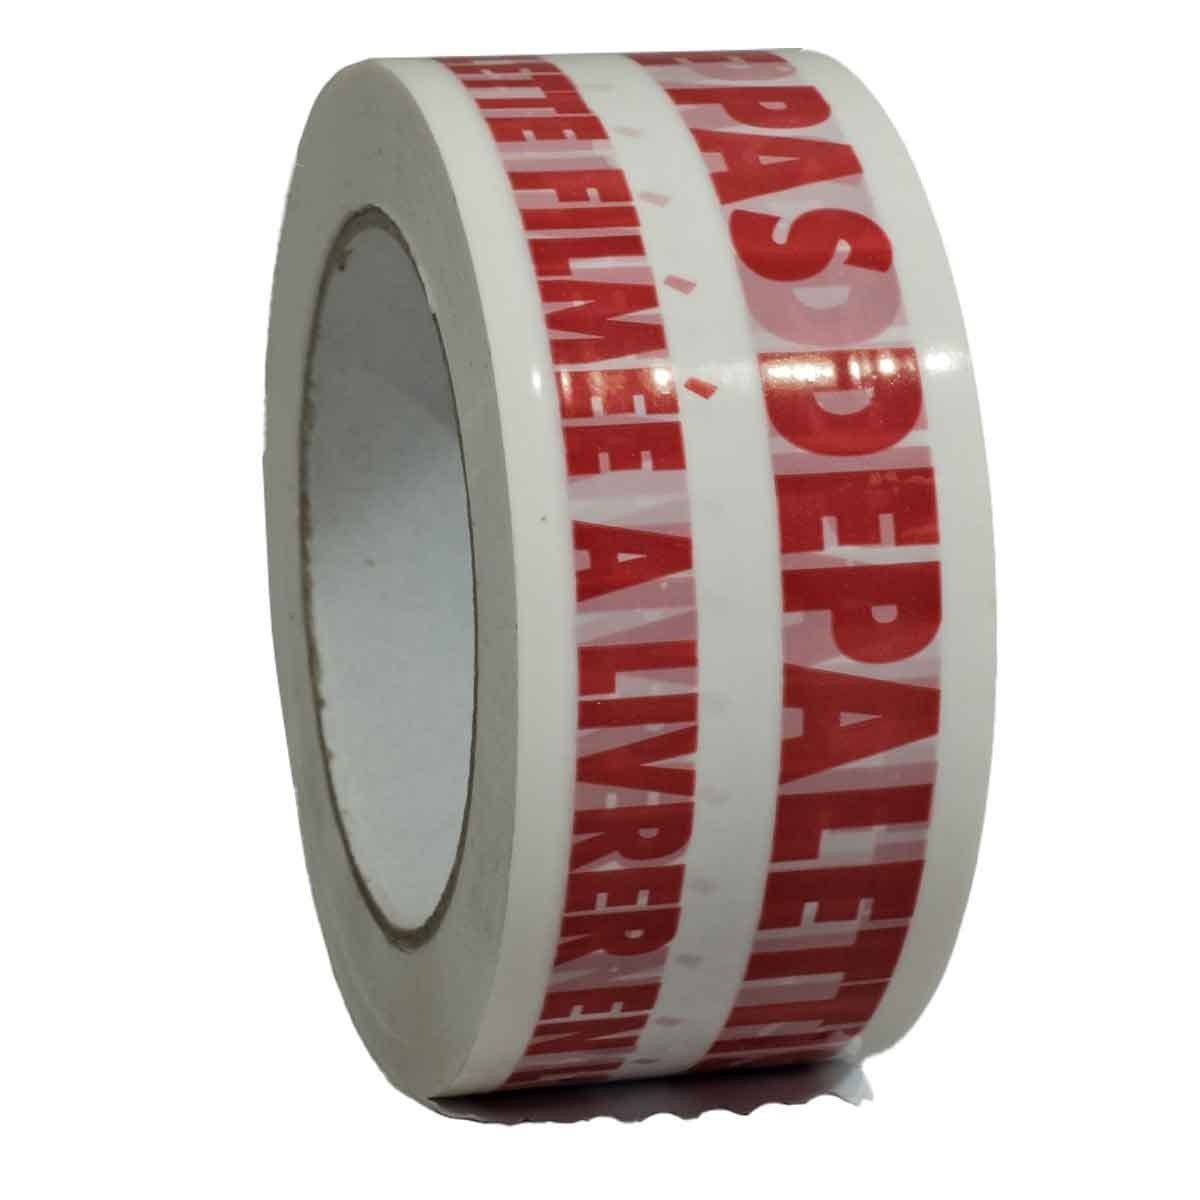 Nastro da Imballaggio Bianco 28µ con stampa NE PAS DEPALETTISER in rosso  - Nastro adesivo per spedizione 50 mm x 100 m